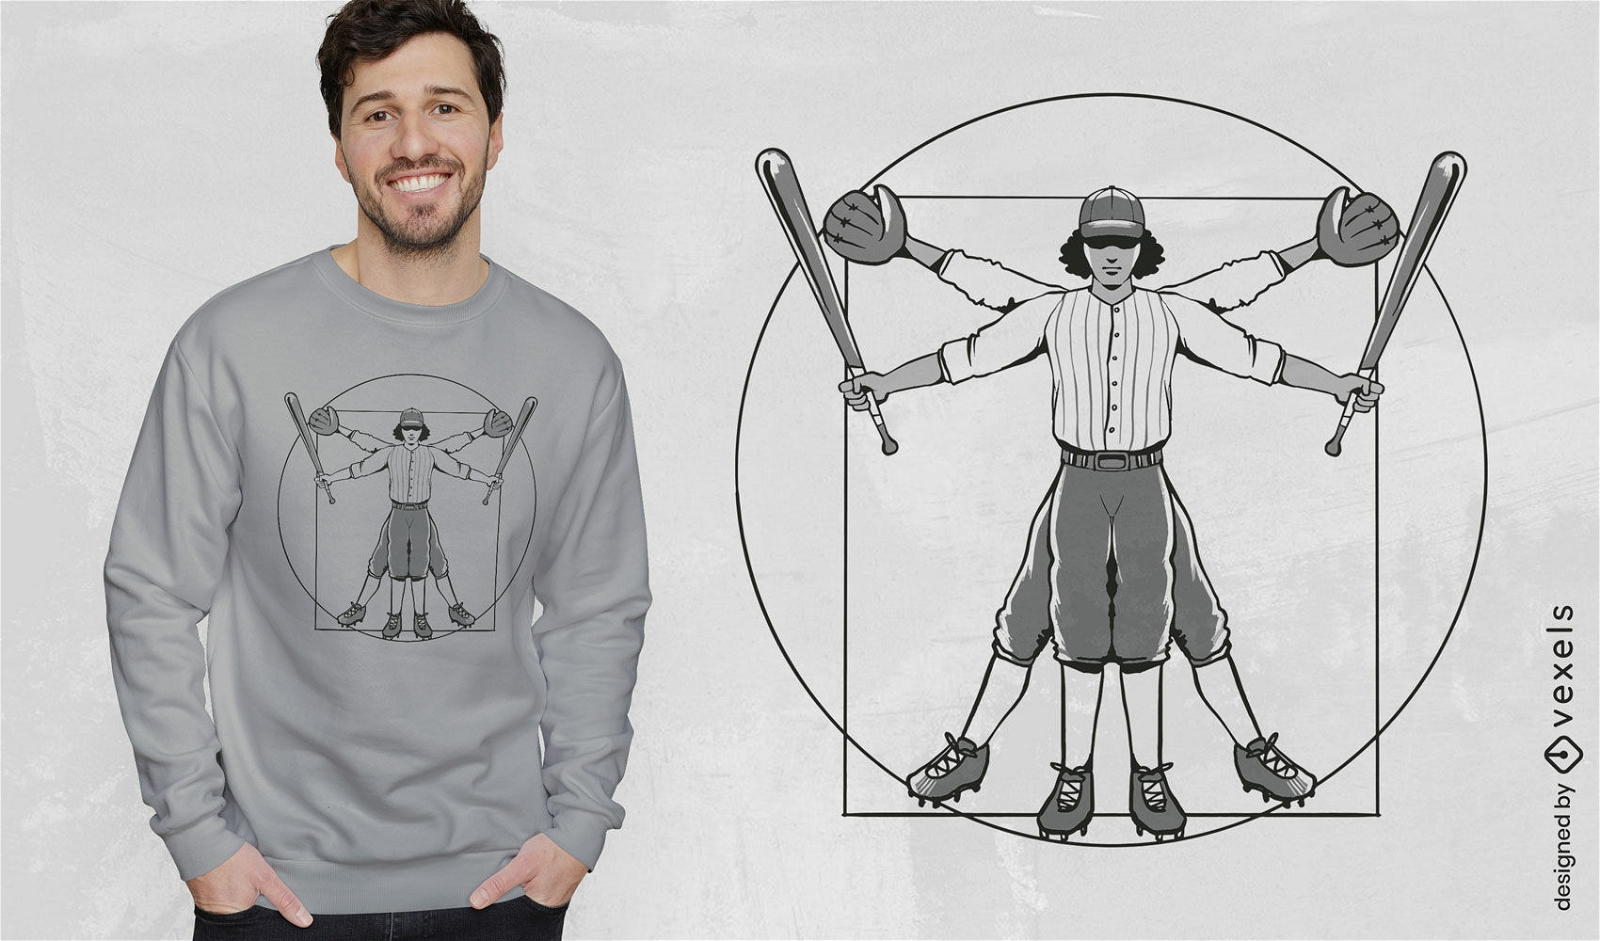 Dise?o creativo de camiseta de b?isbol.